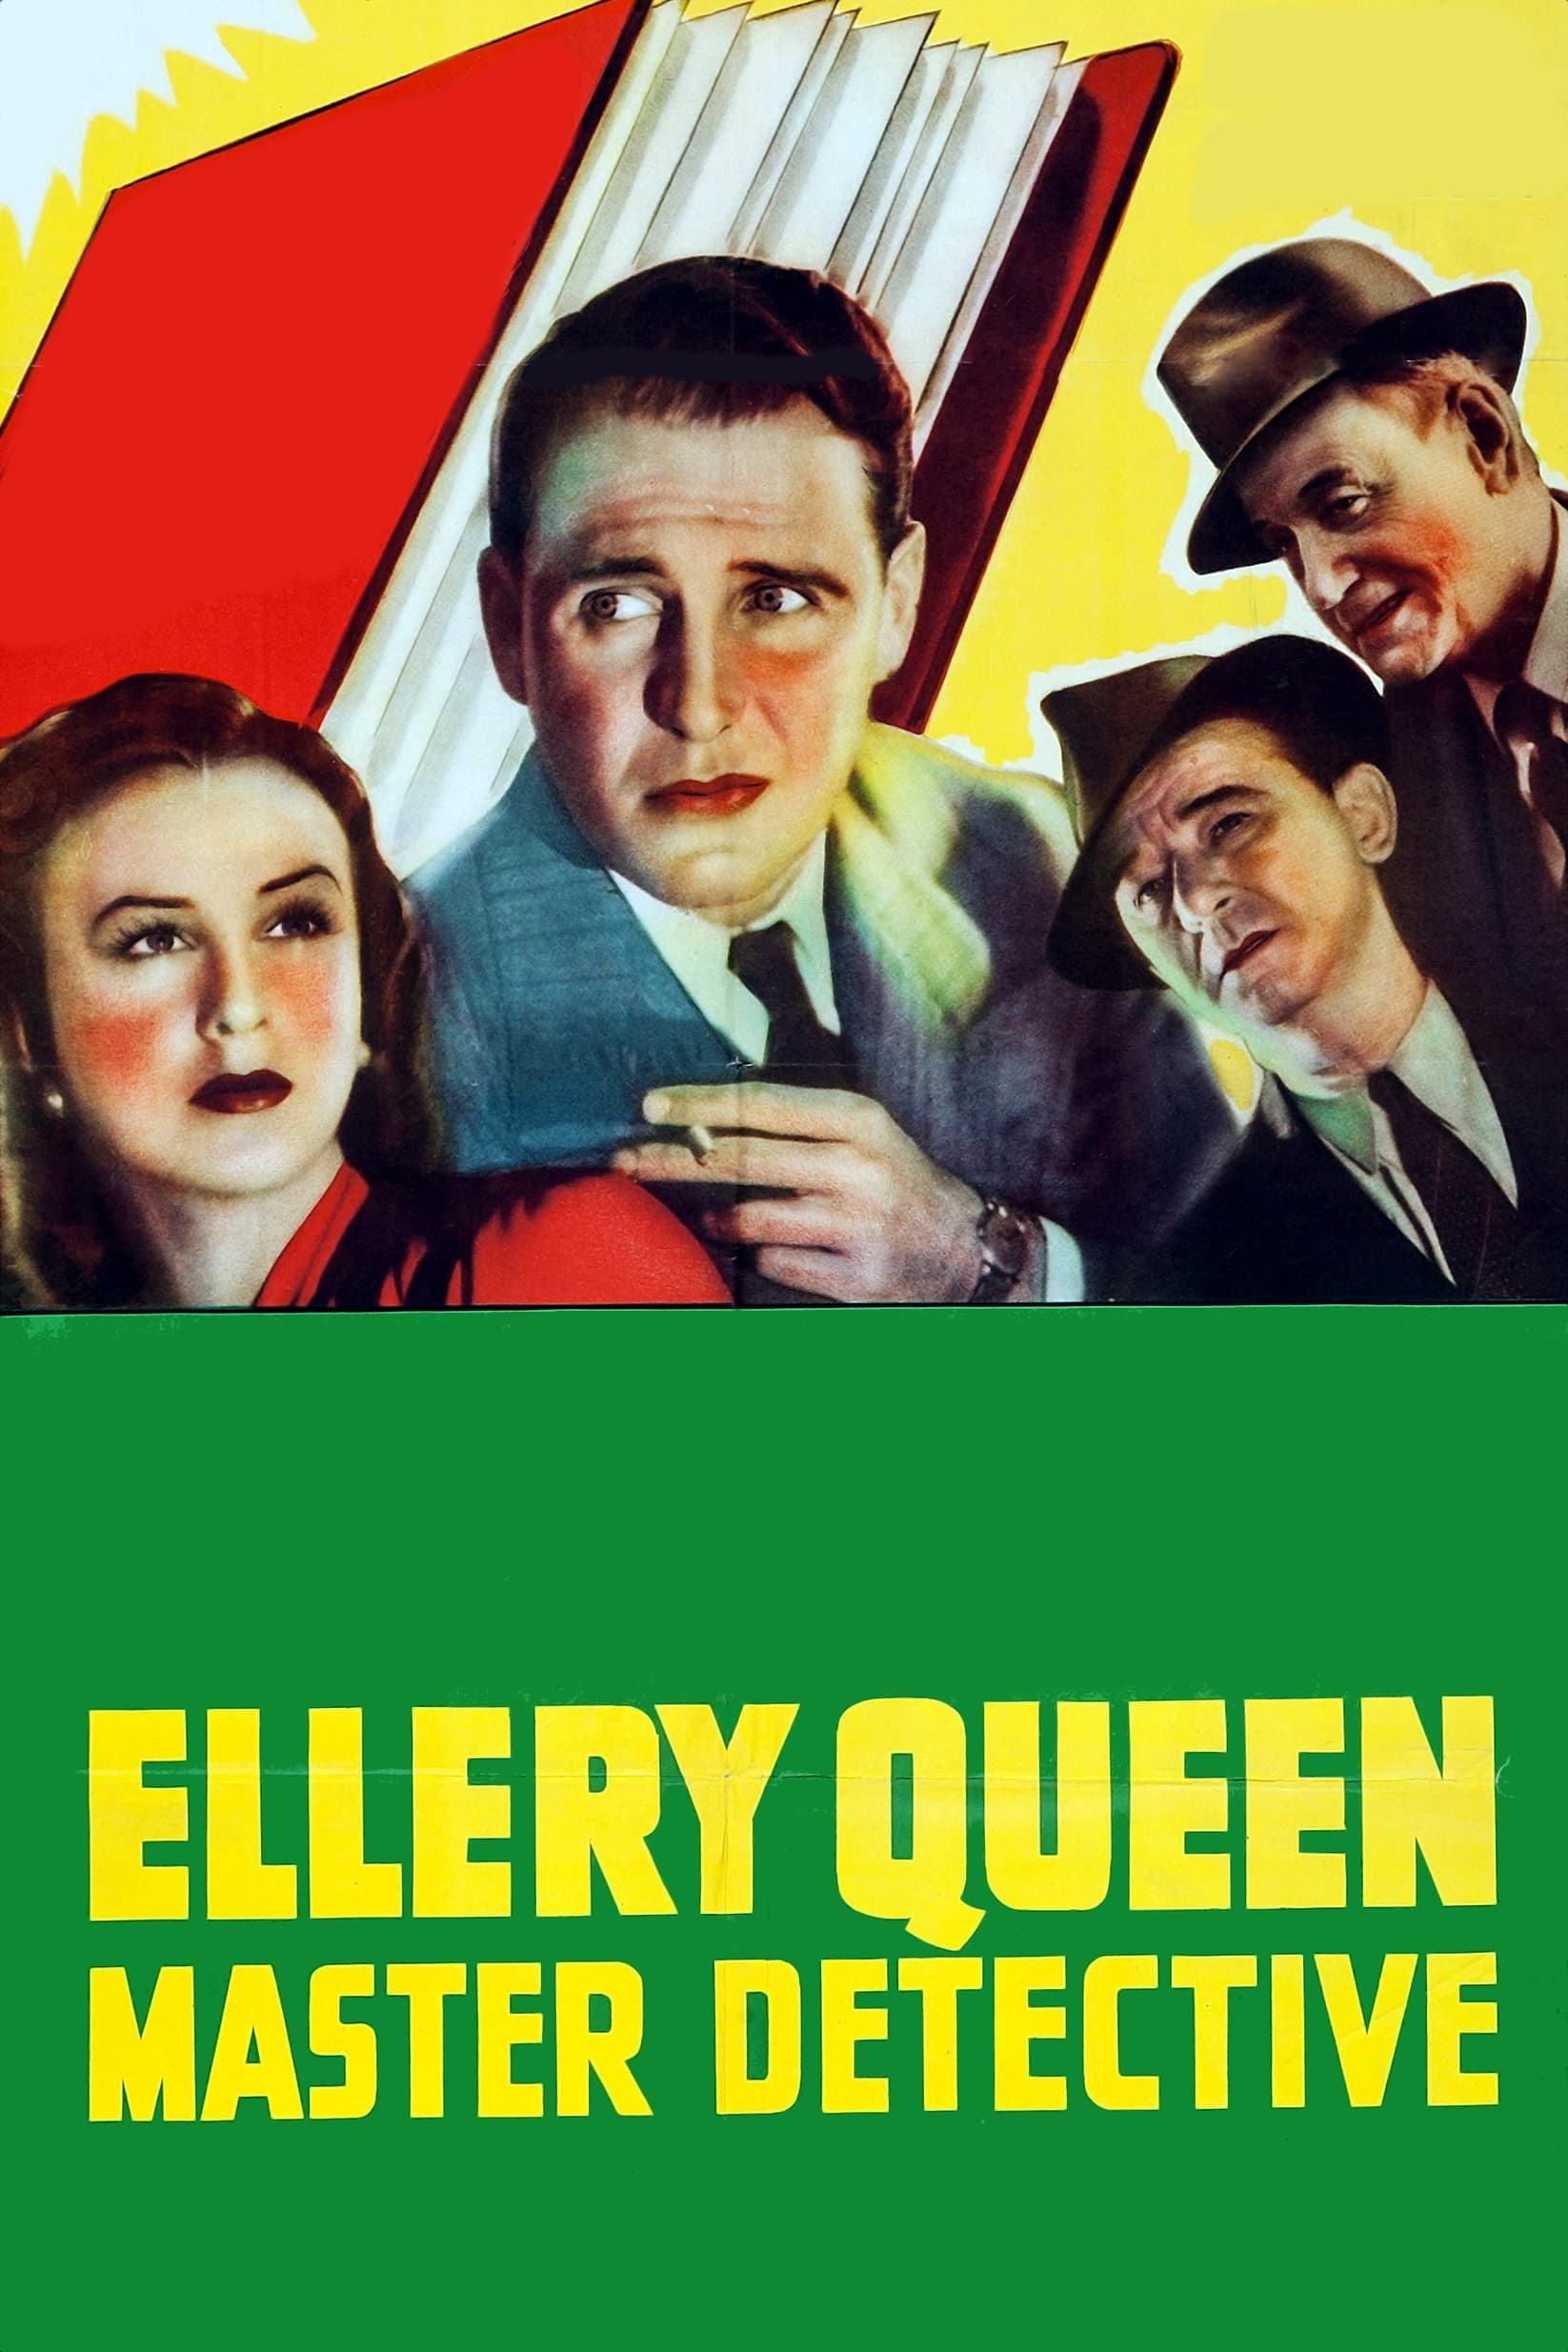 Ellery Queen, Master Detective (1940)